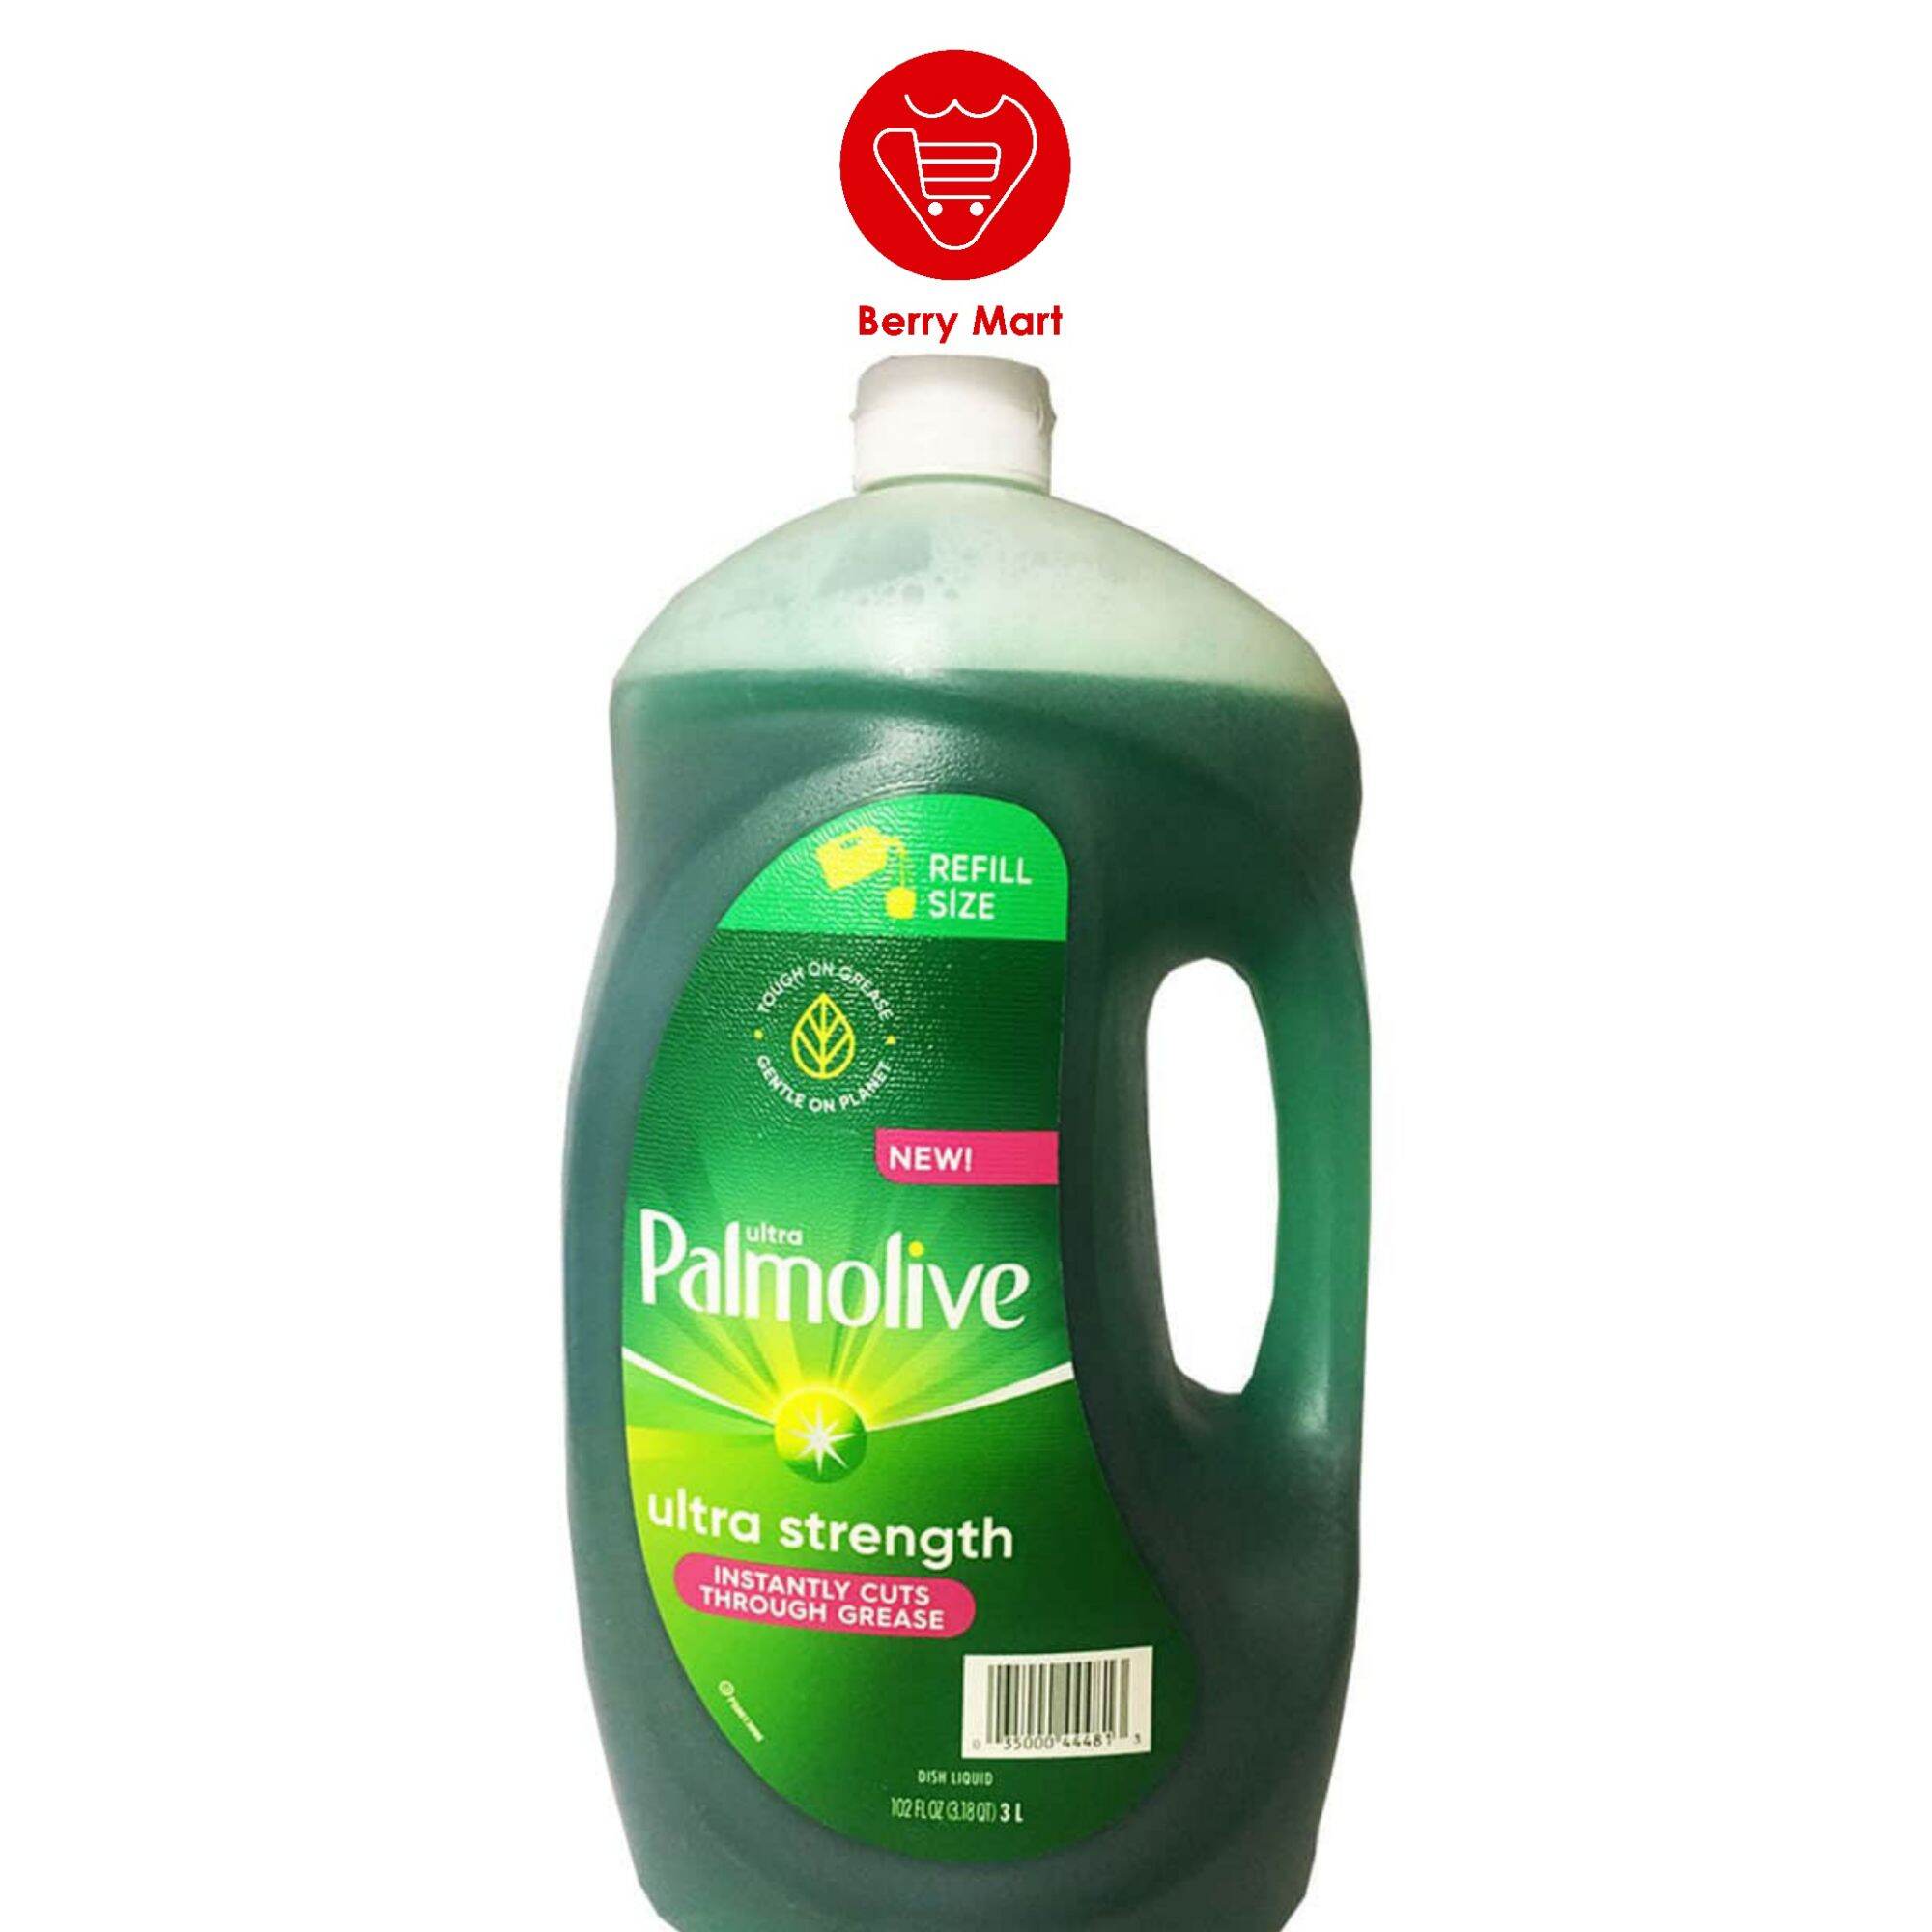 Nước rửa chén Palmolive Utra Strength 3l Nước Rửa chén chính hãng từ Mỹ với các thành phần làm từ tự nhiên, sản phẩm cũng không có tác hại cho da tay của bản, bảo vệ tay người sử dụng Berry Mart BR187 thumbnail